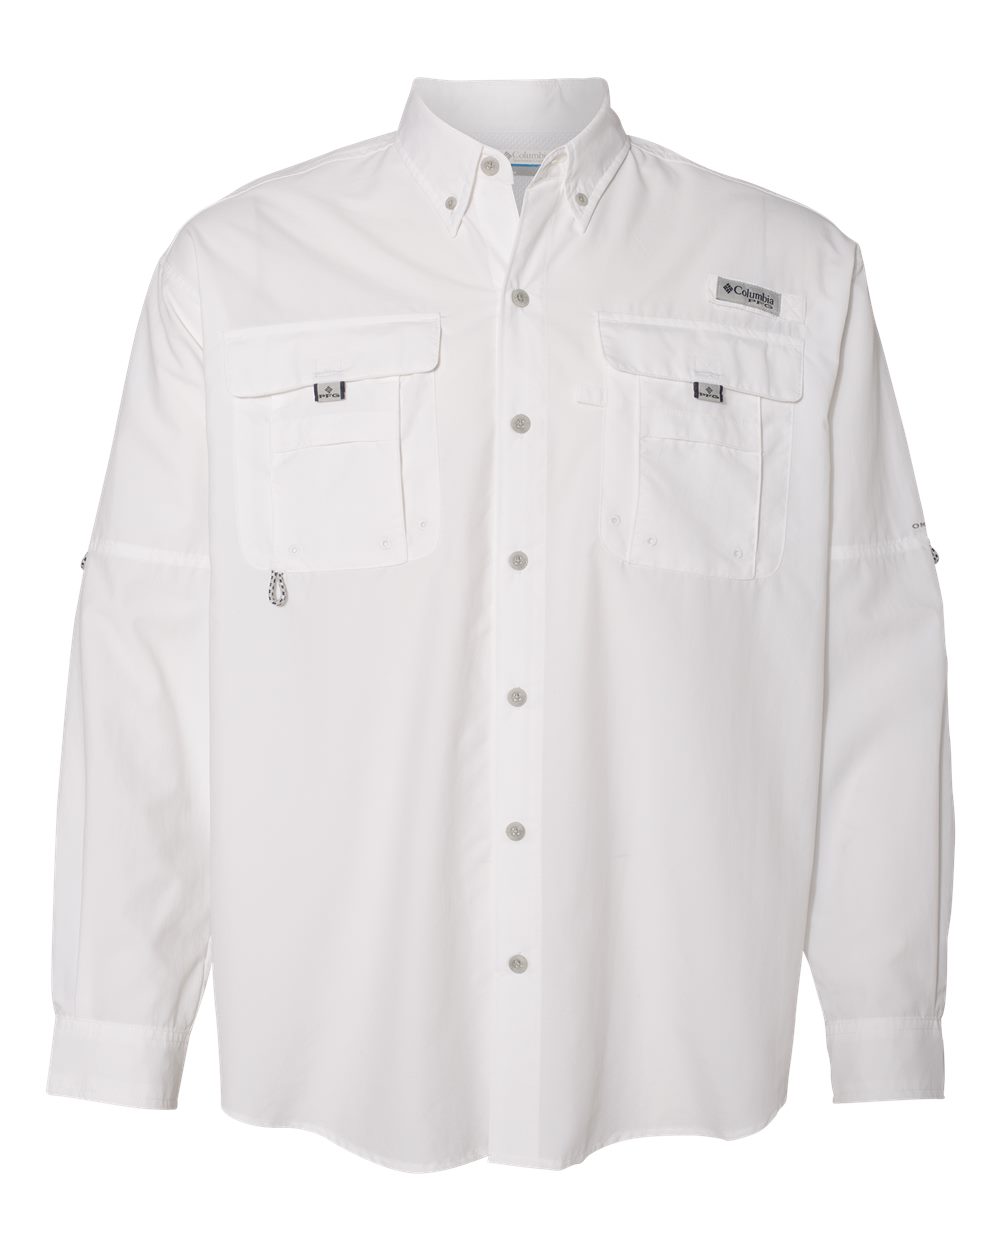 PFG Bahama™ II Long Sleeve Shirt-Columbia